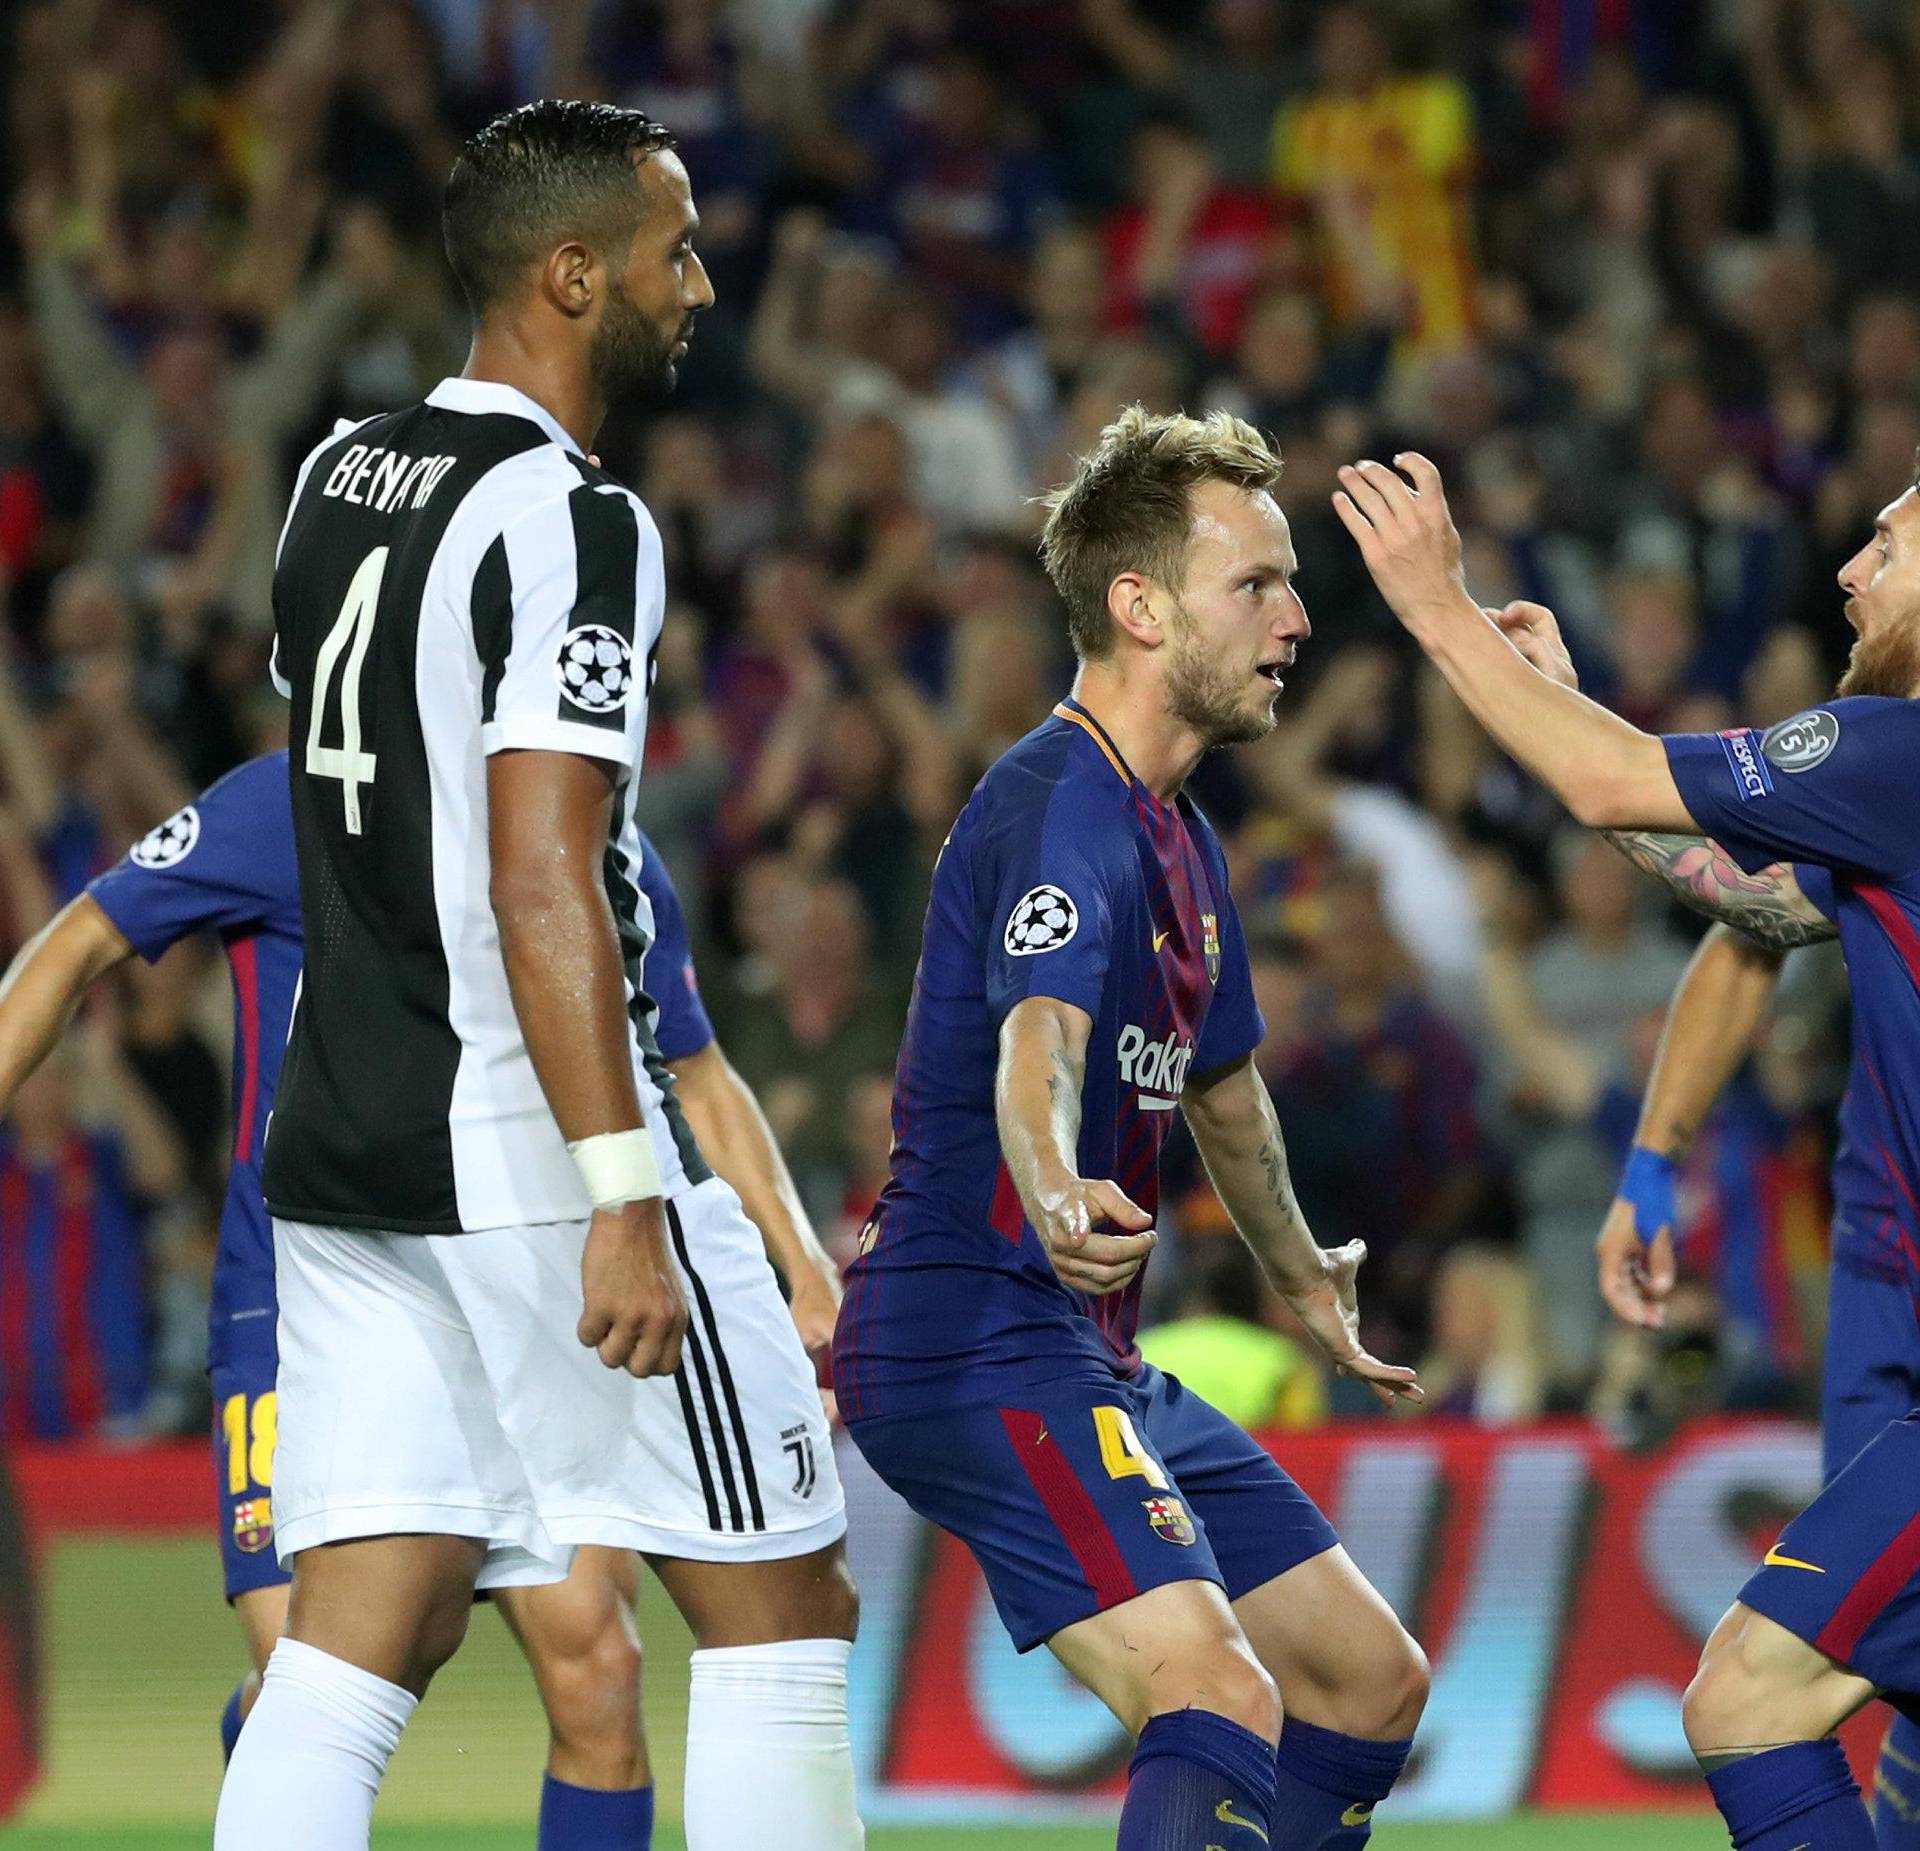 Champions League - FC Barcelona vs Juventus